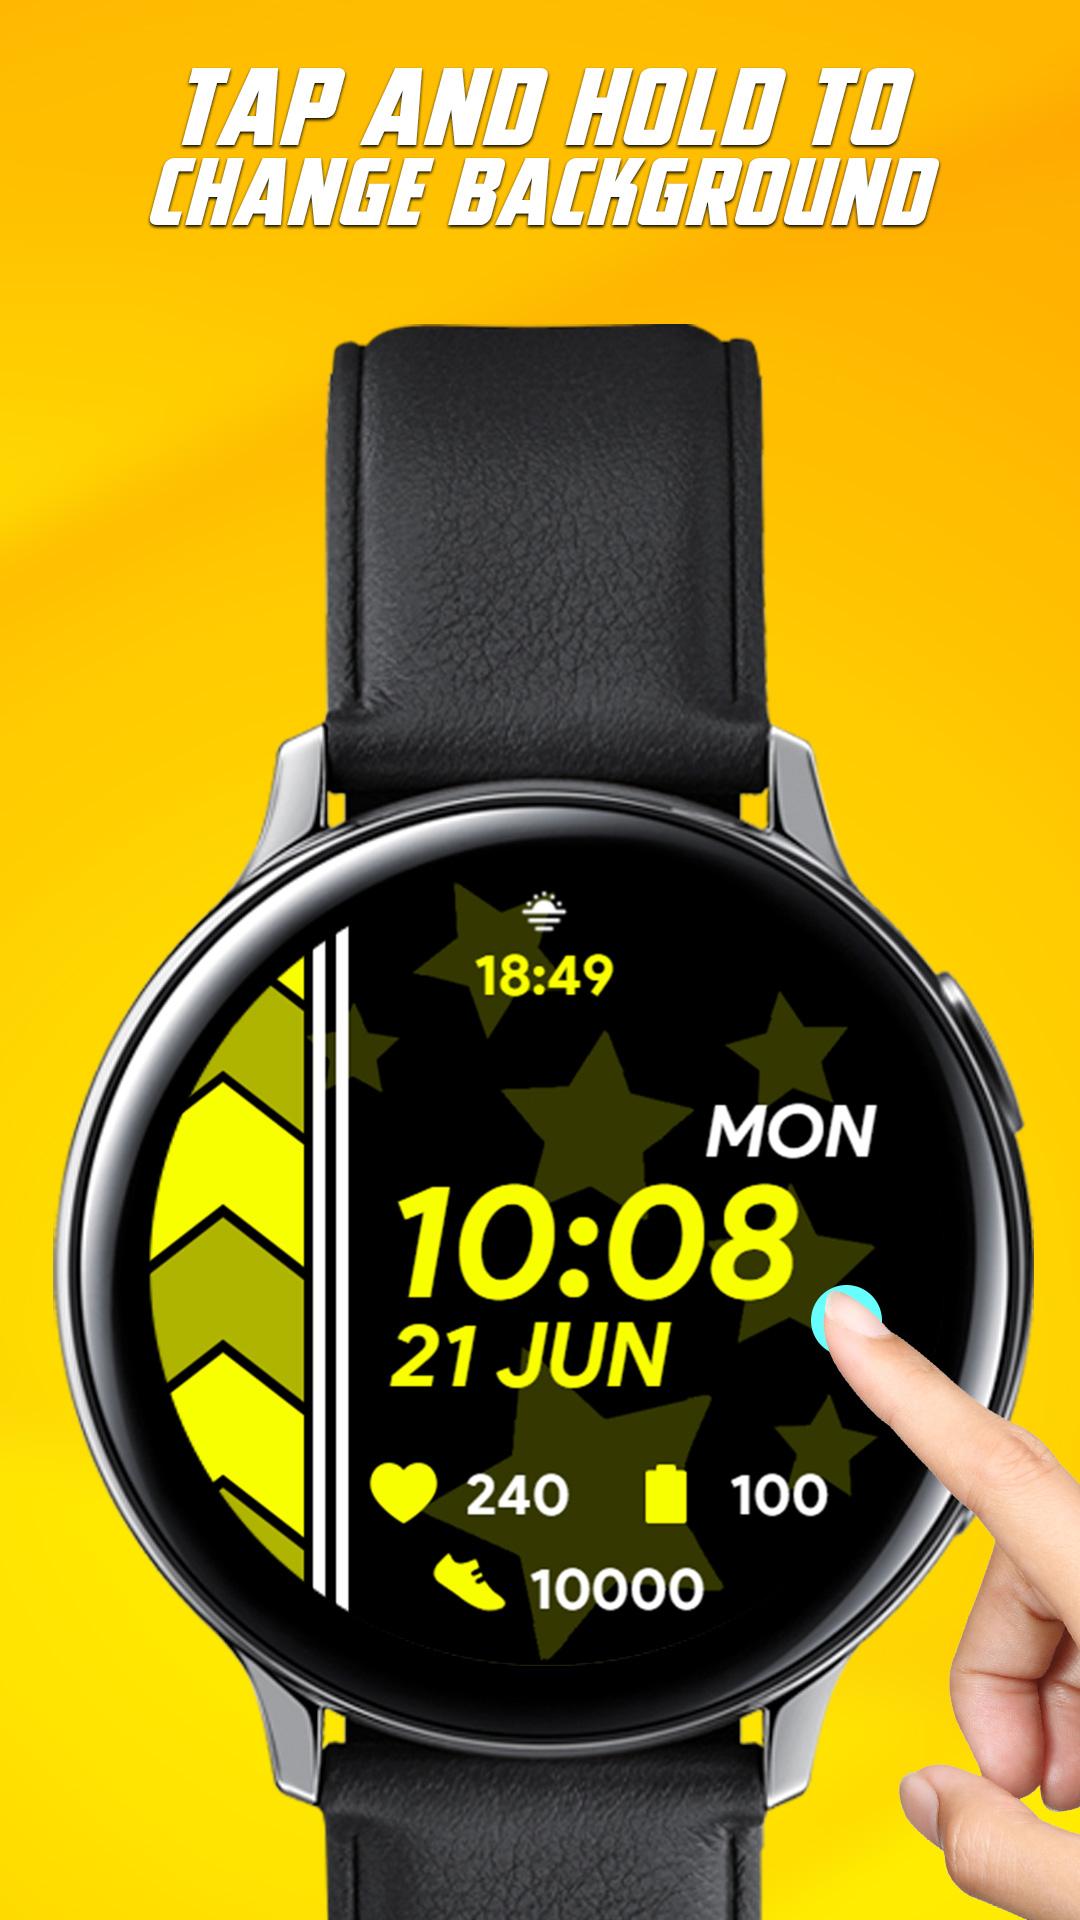 Arrow Watch APK - Android Download: Muốn tải về ứng dụng đồng hồ thông minh Arrow Watch trên hệ điều hành Android để cập nhật những tính năng mới nhất và tùy chỉnh thiết lập cho chiếc đồng hồ của mình? Hãy nhanh tay tải ngay và trải nghiệm những tính năng thông minh, chức năng đa dạng và giao diện đẹp mắt của ứng dụng này.